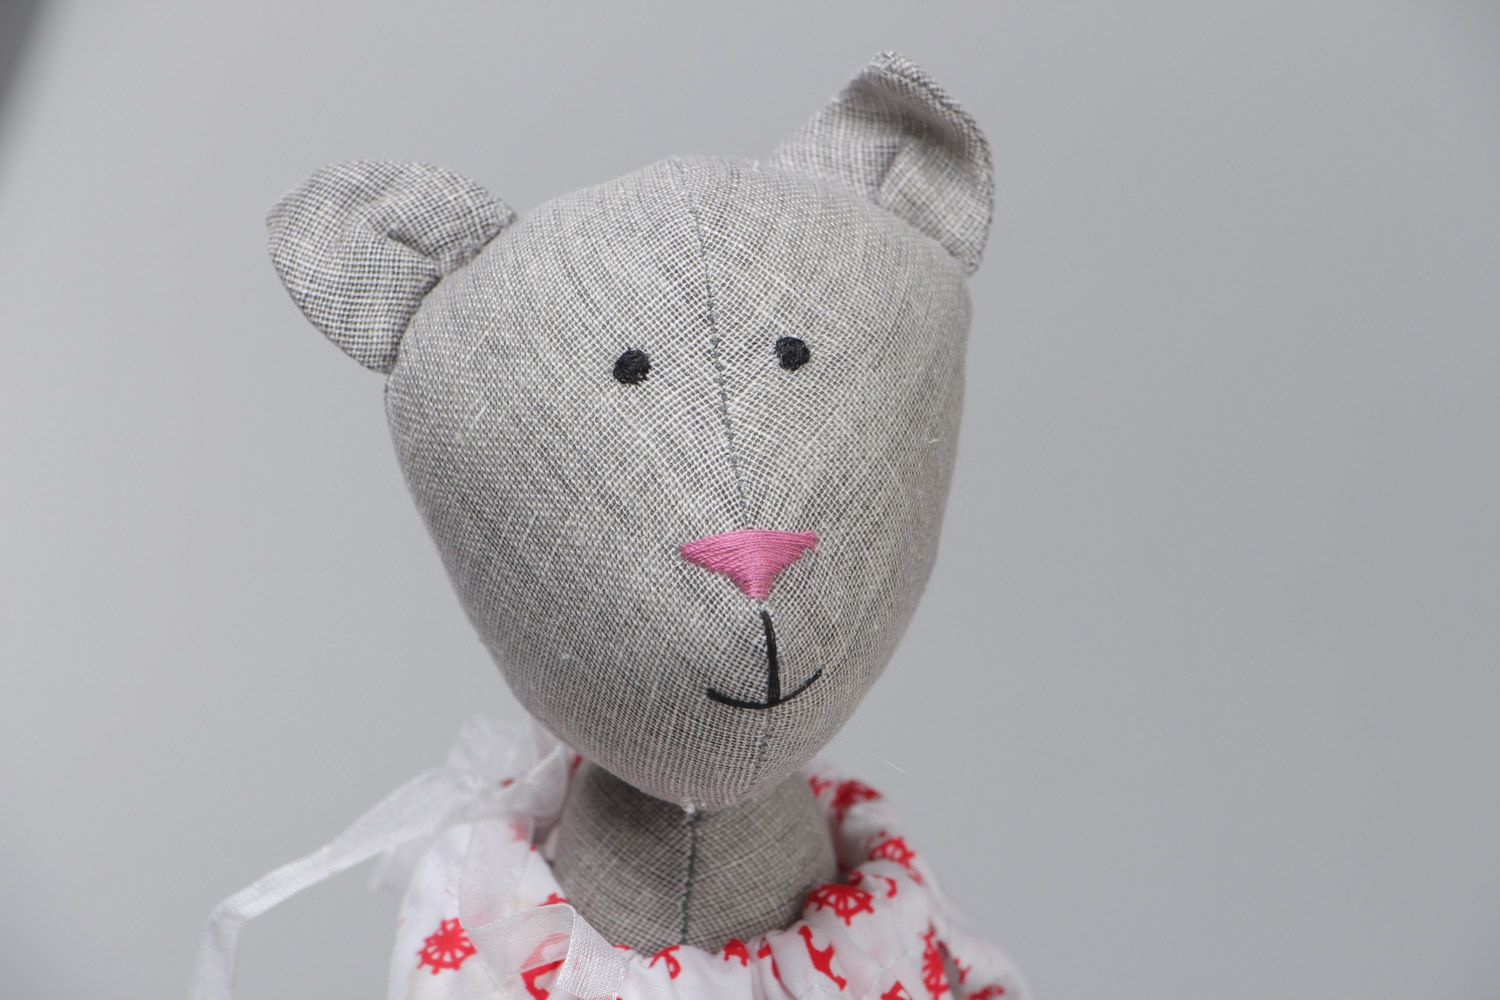 Мягкая текстильная игрушка кошечка в платье пошитая вручную из льна и хлопка фото 3